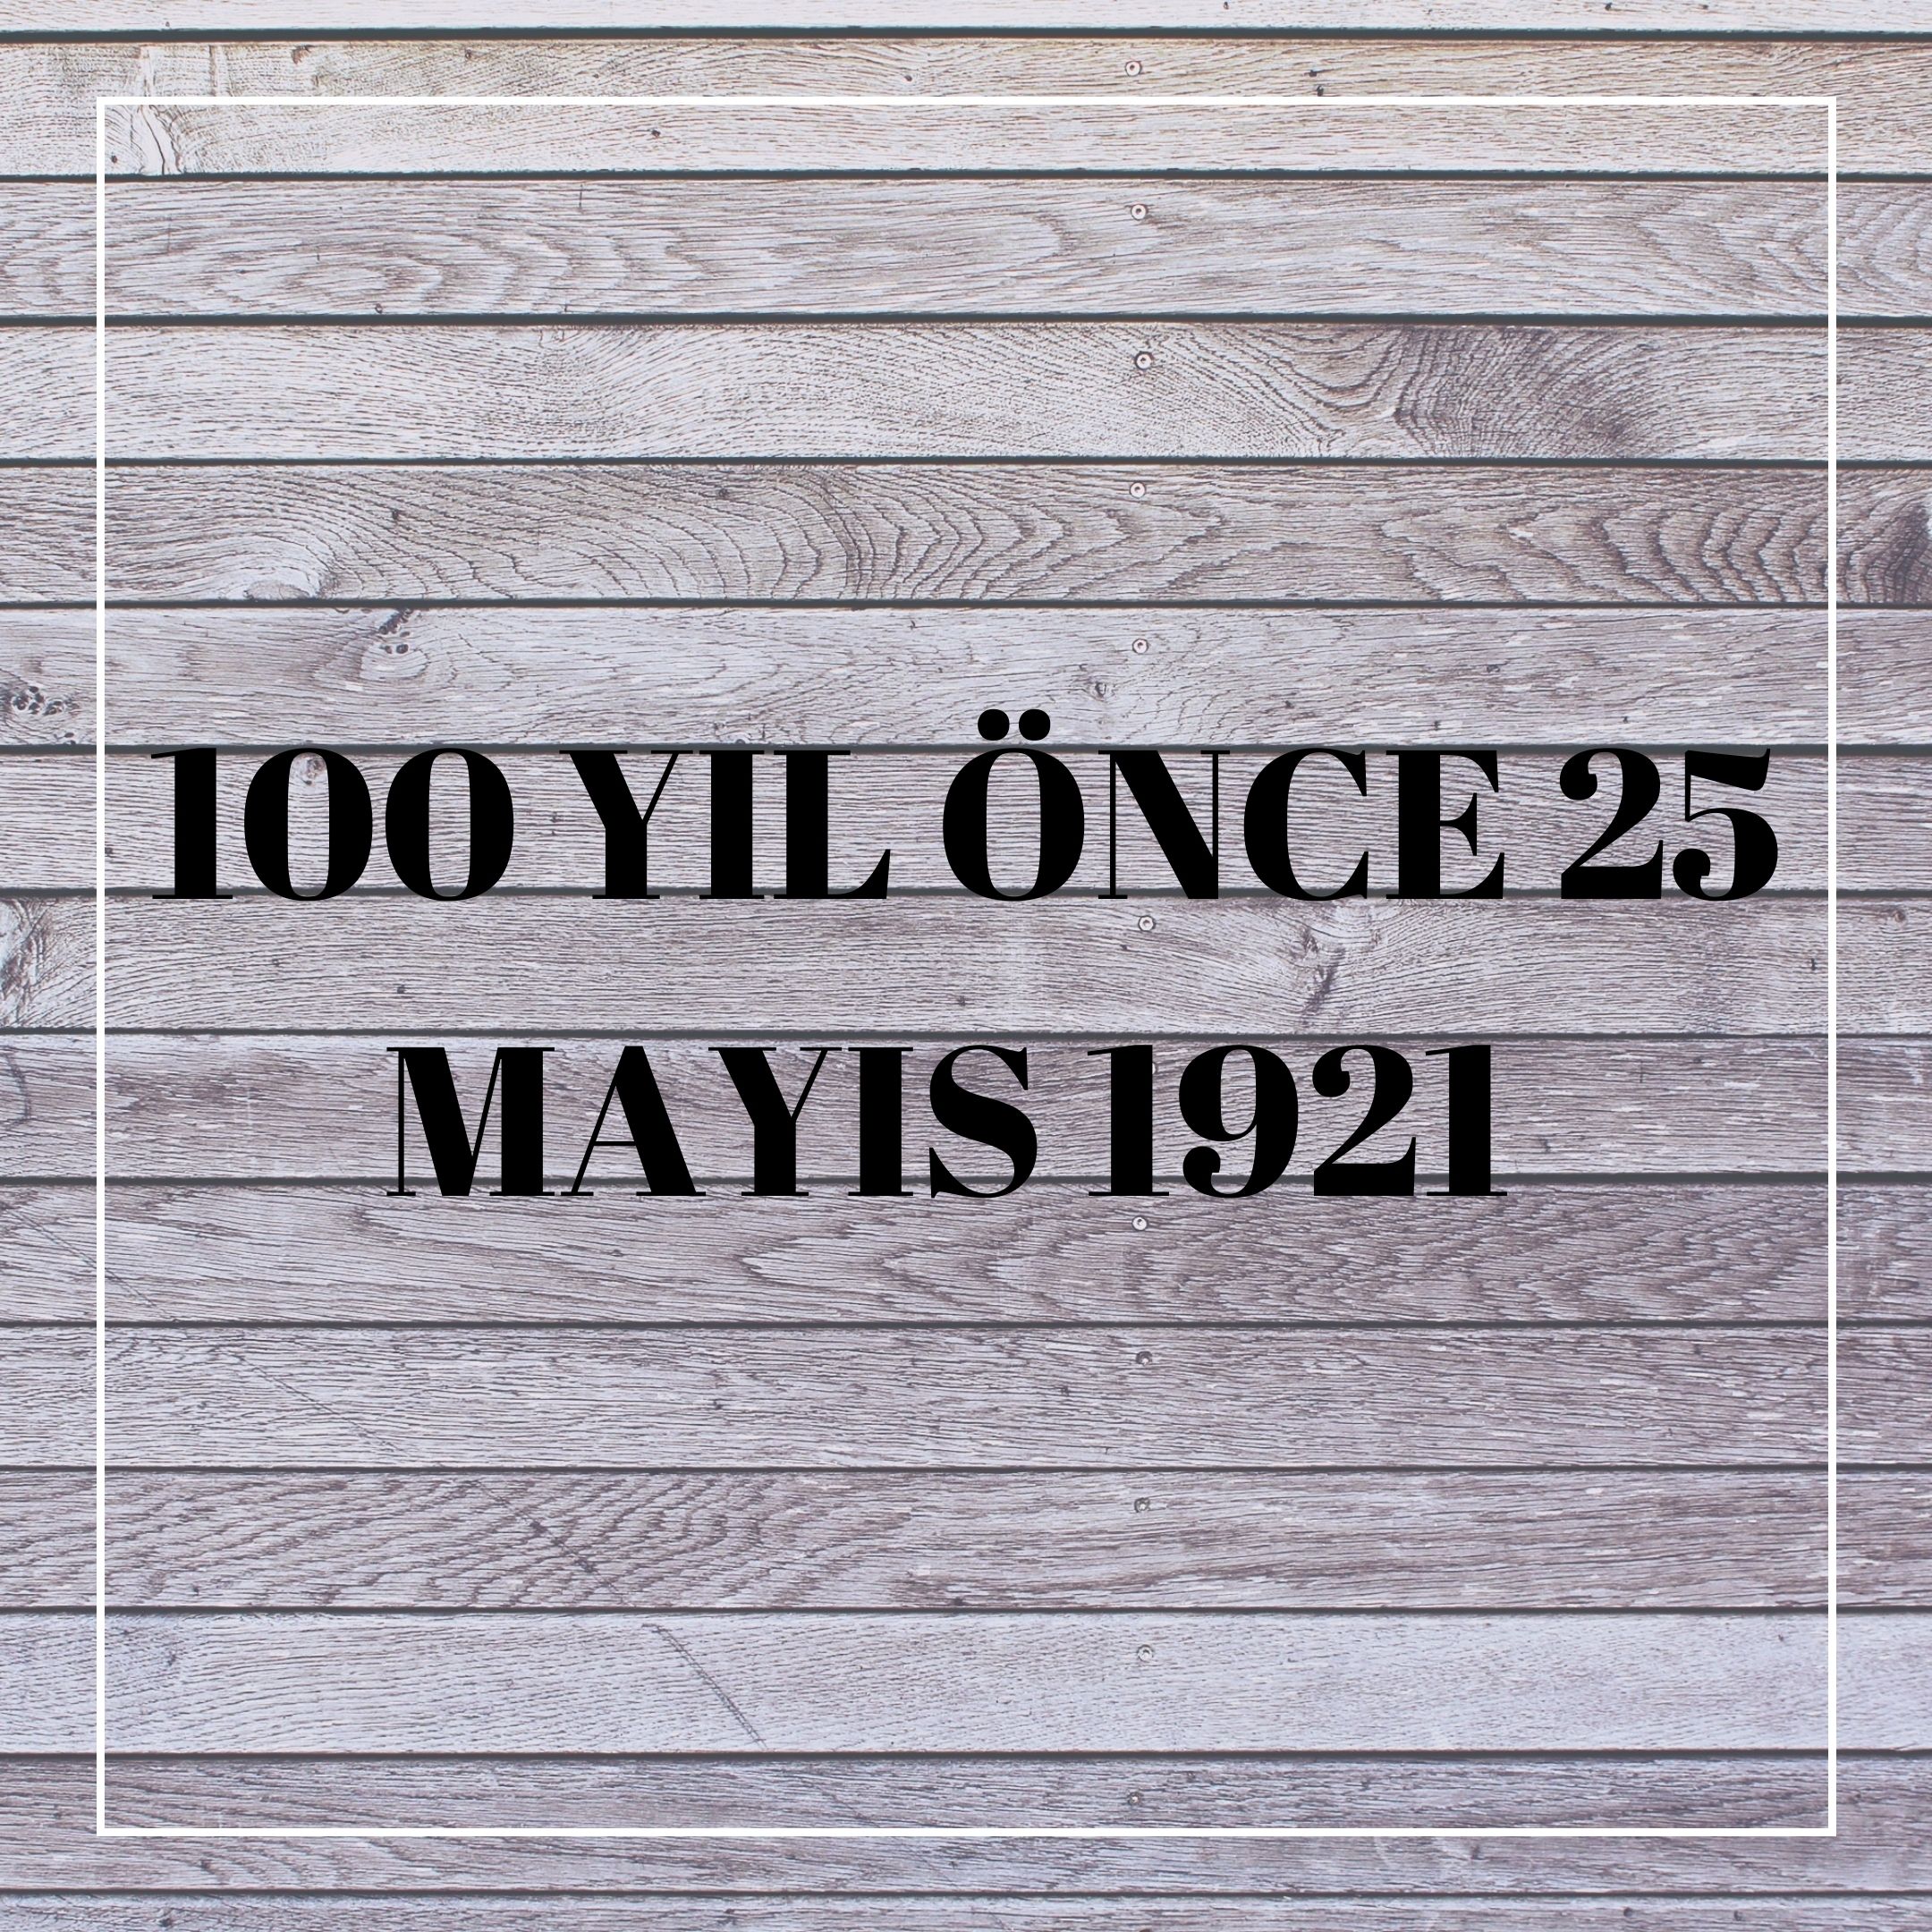 100 YIL ÖNCE 25 MAYIS 1921